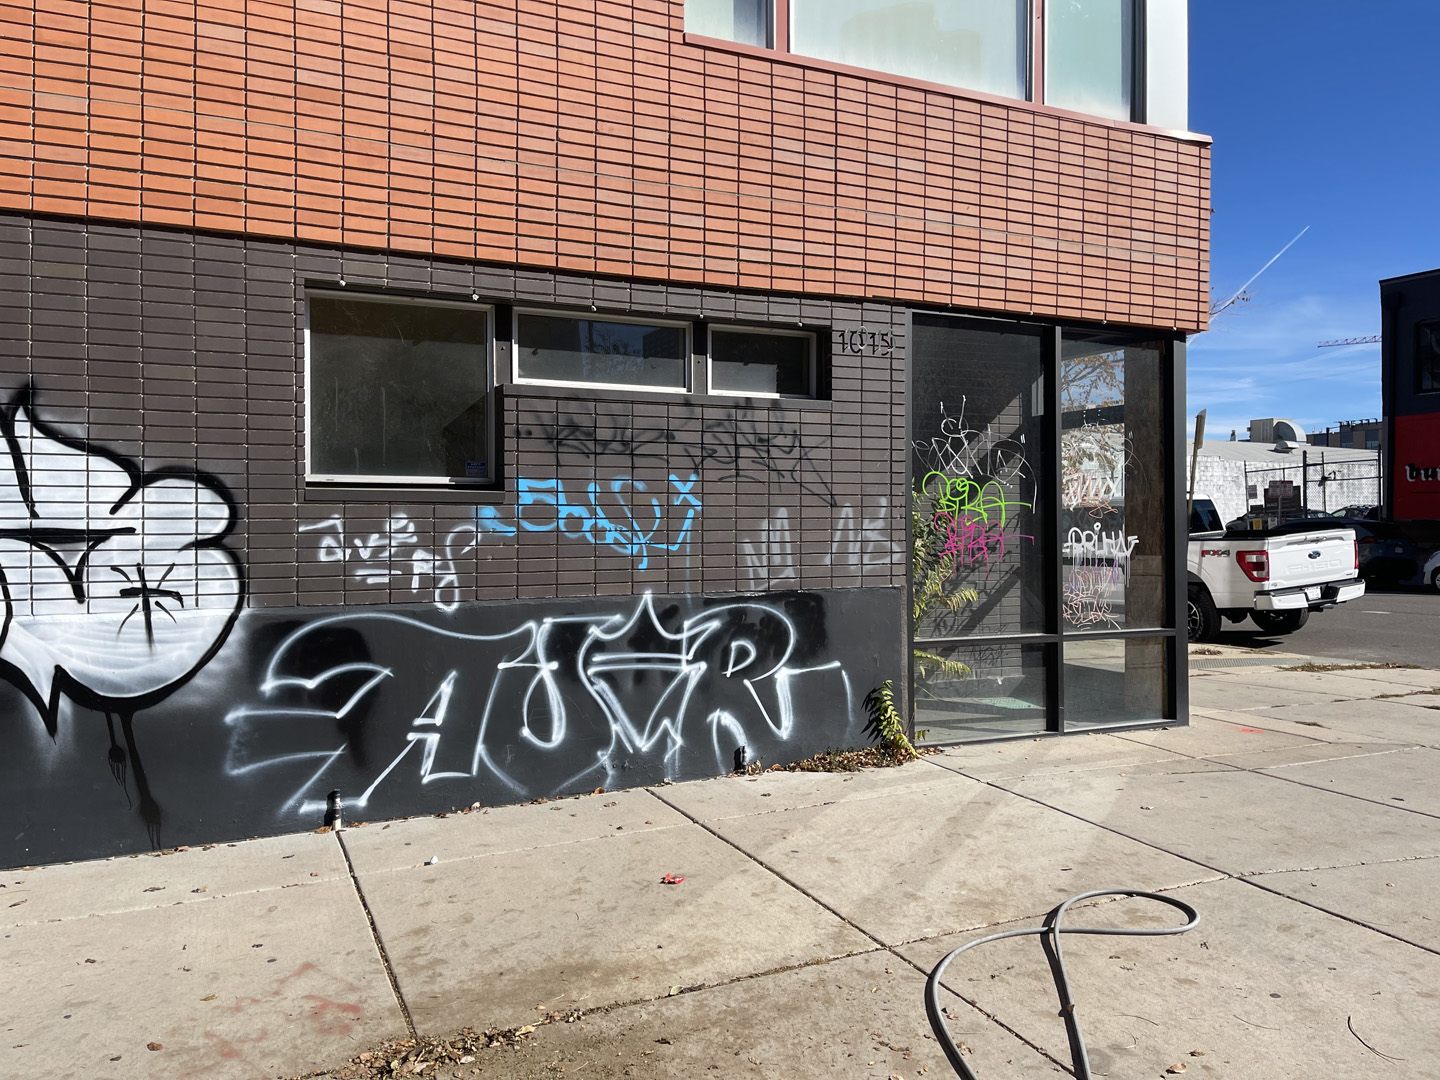 graffiti-removal-04-2021